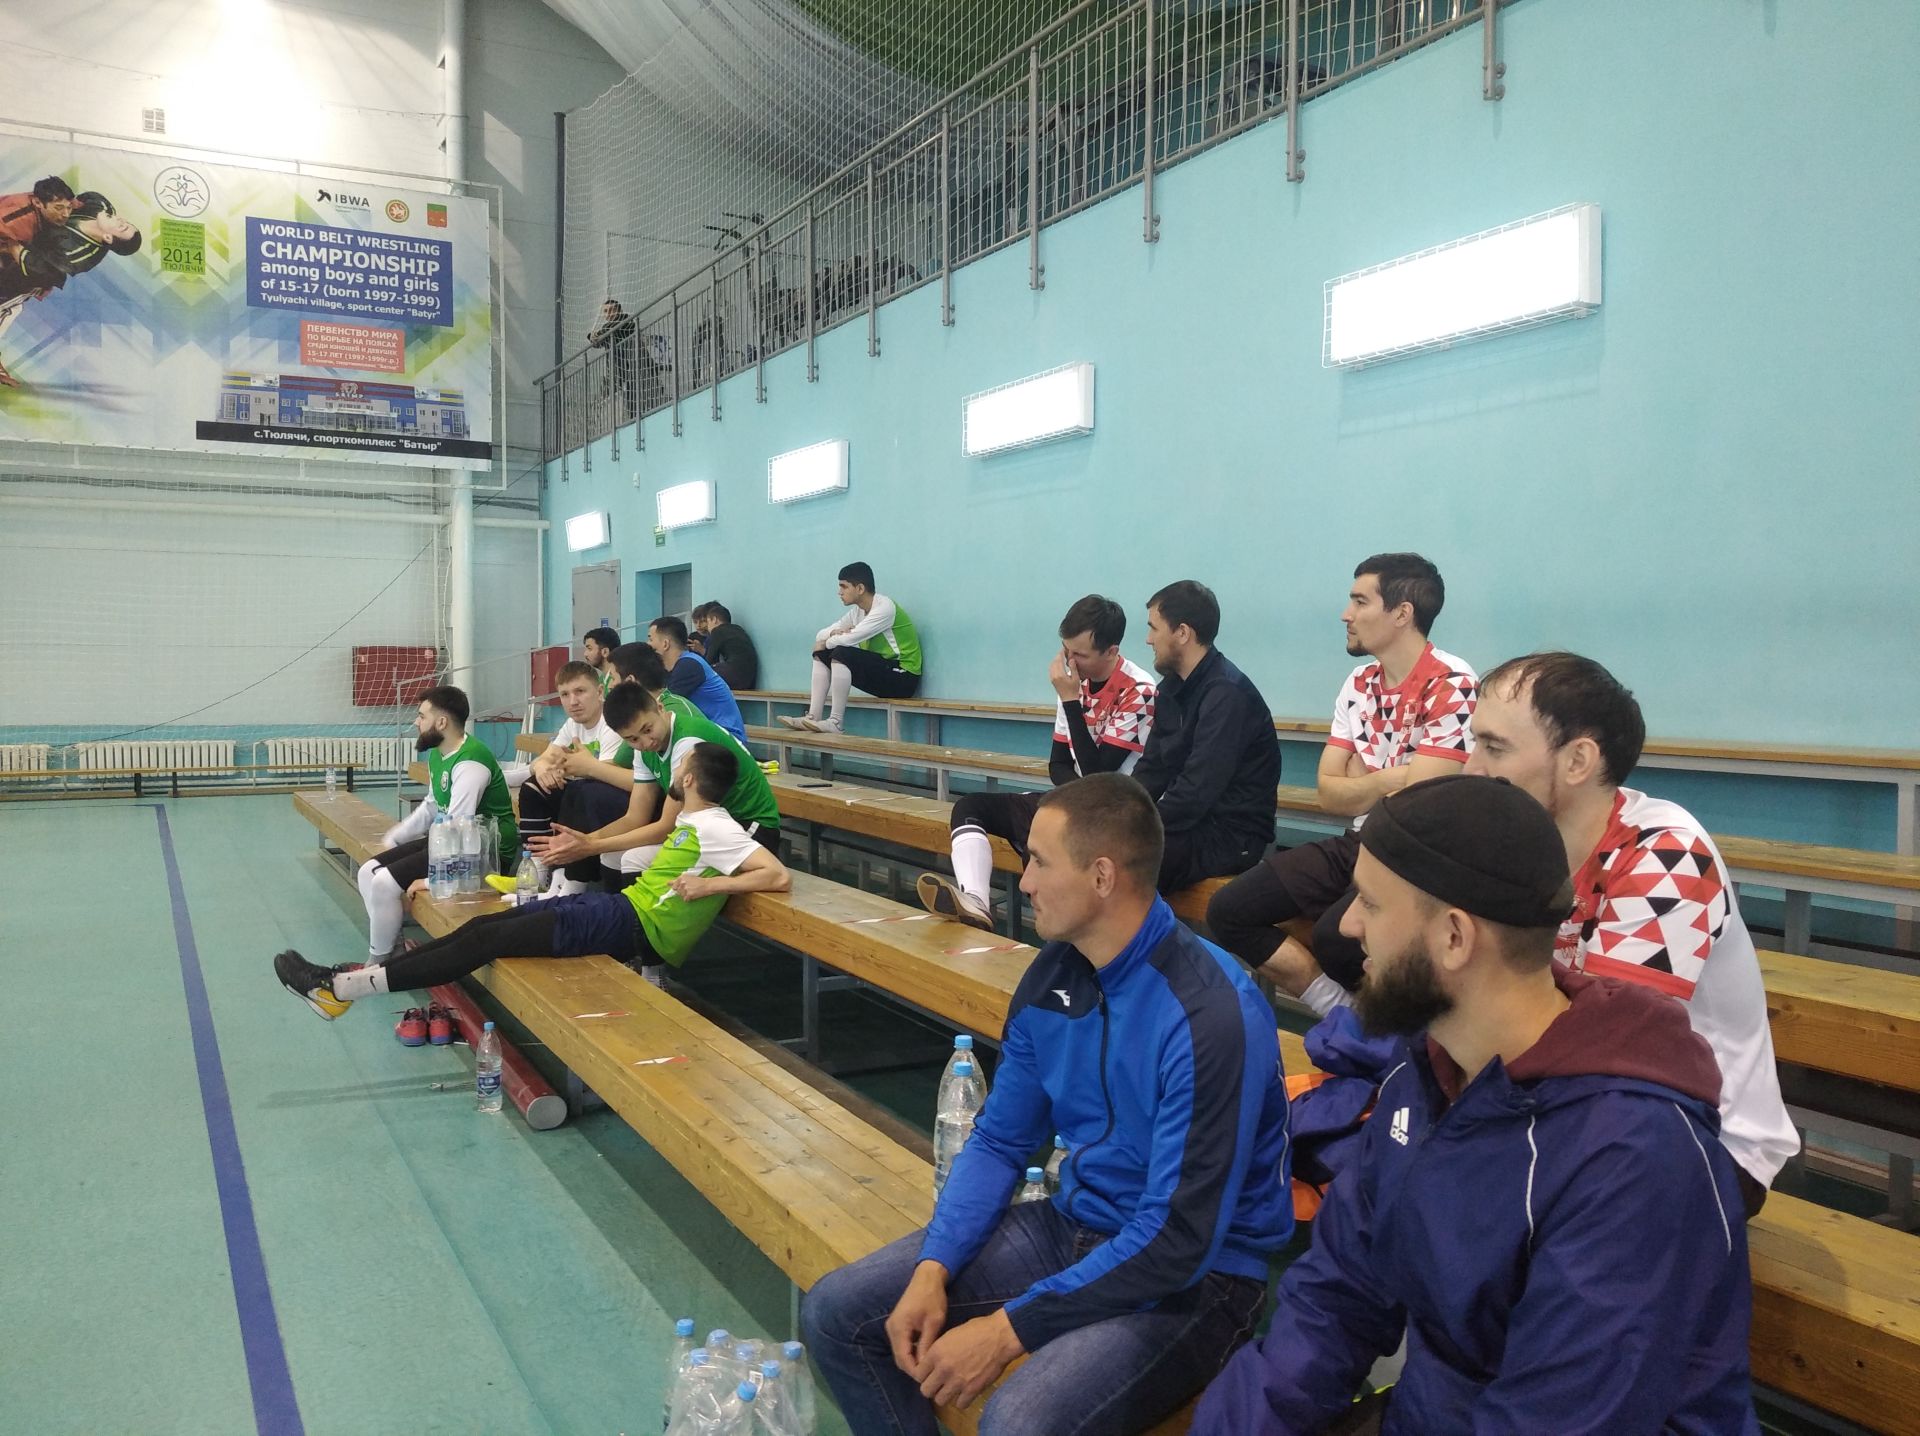 Районда Идел буе Болгар дәүләтендә Ислам динен кабул итүнең 1100 еллыгына багышланган футбол ярышы бара